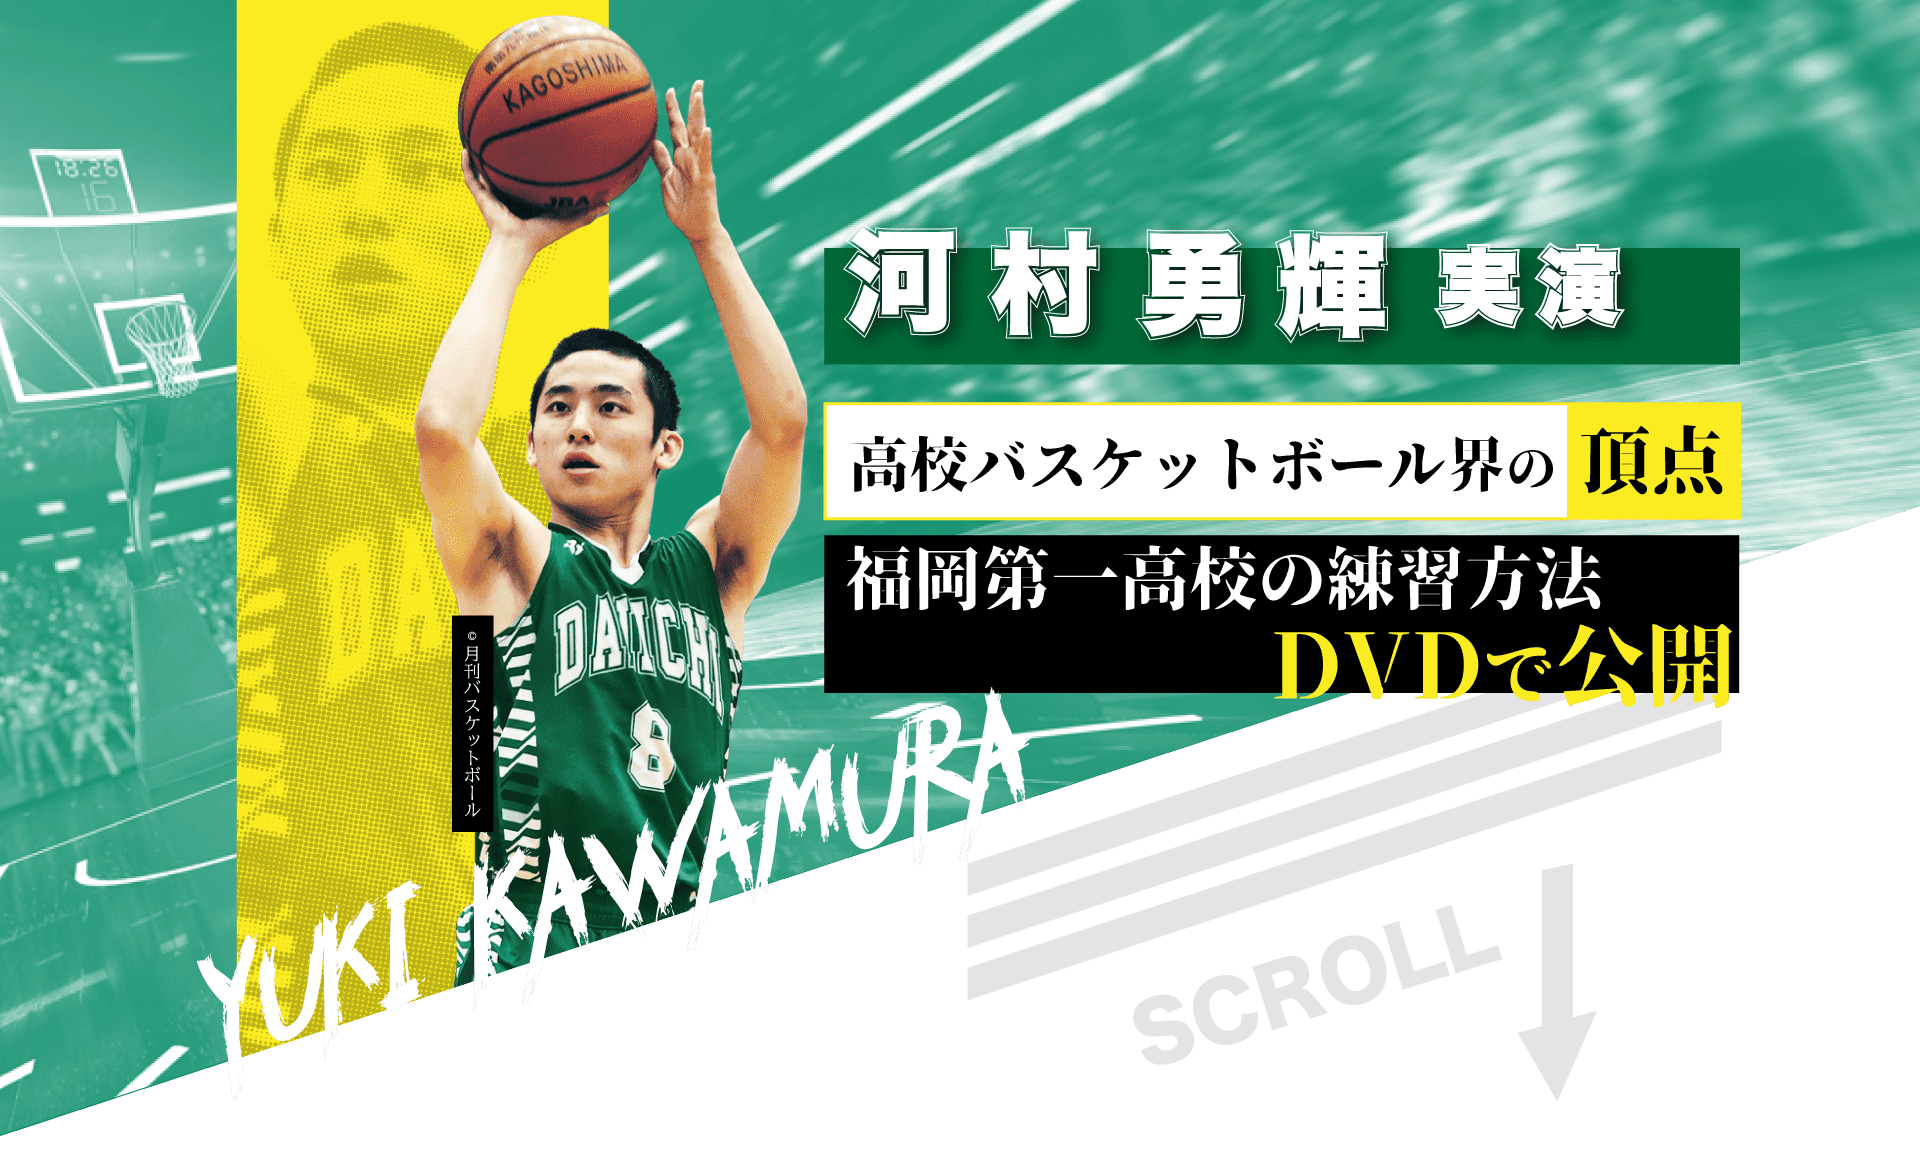 河村勇輝出演dvd 福岡第一高校のバスケットボール練習方法 ジャパンライム株式会社